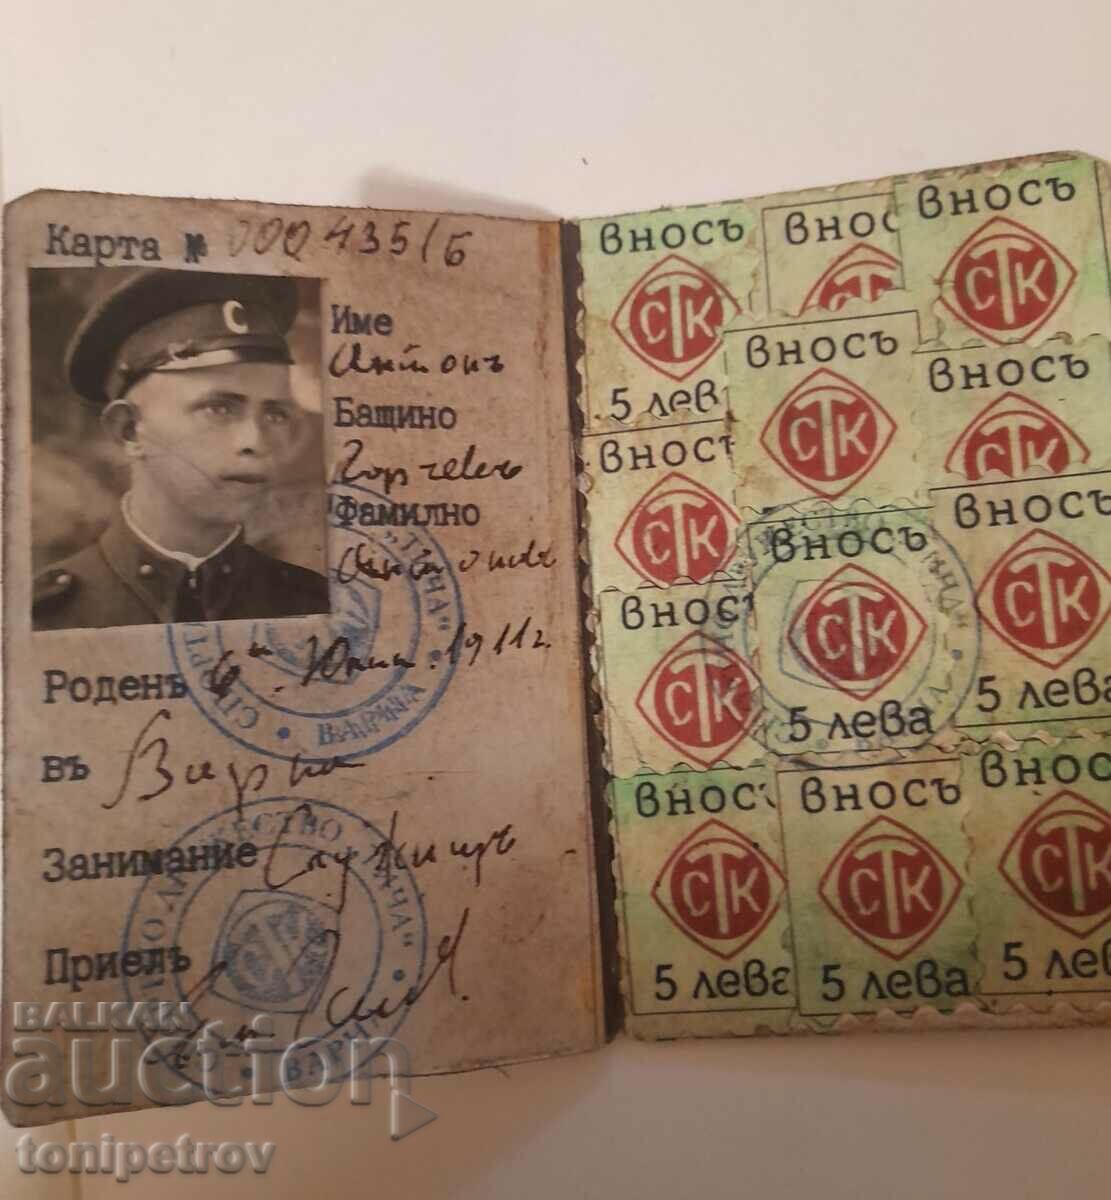 Cartea de membru al S.K. Ticha Varna cu 12 timbre